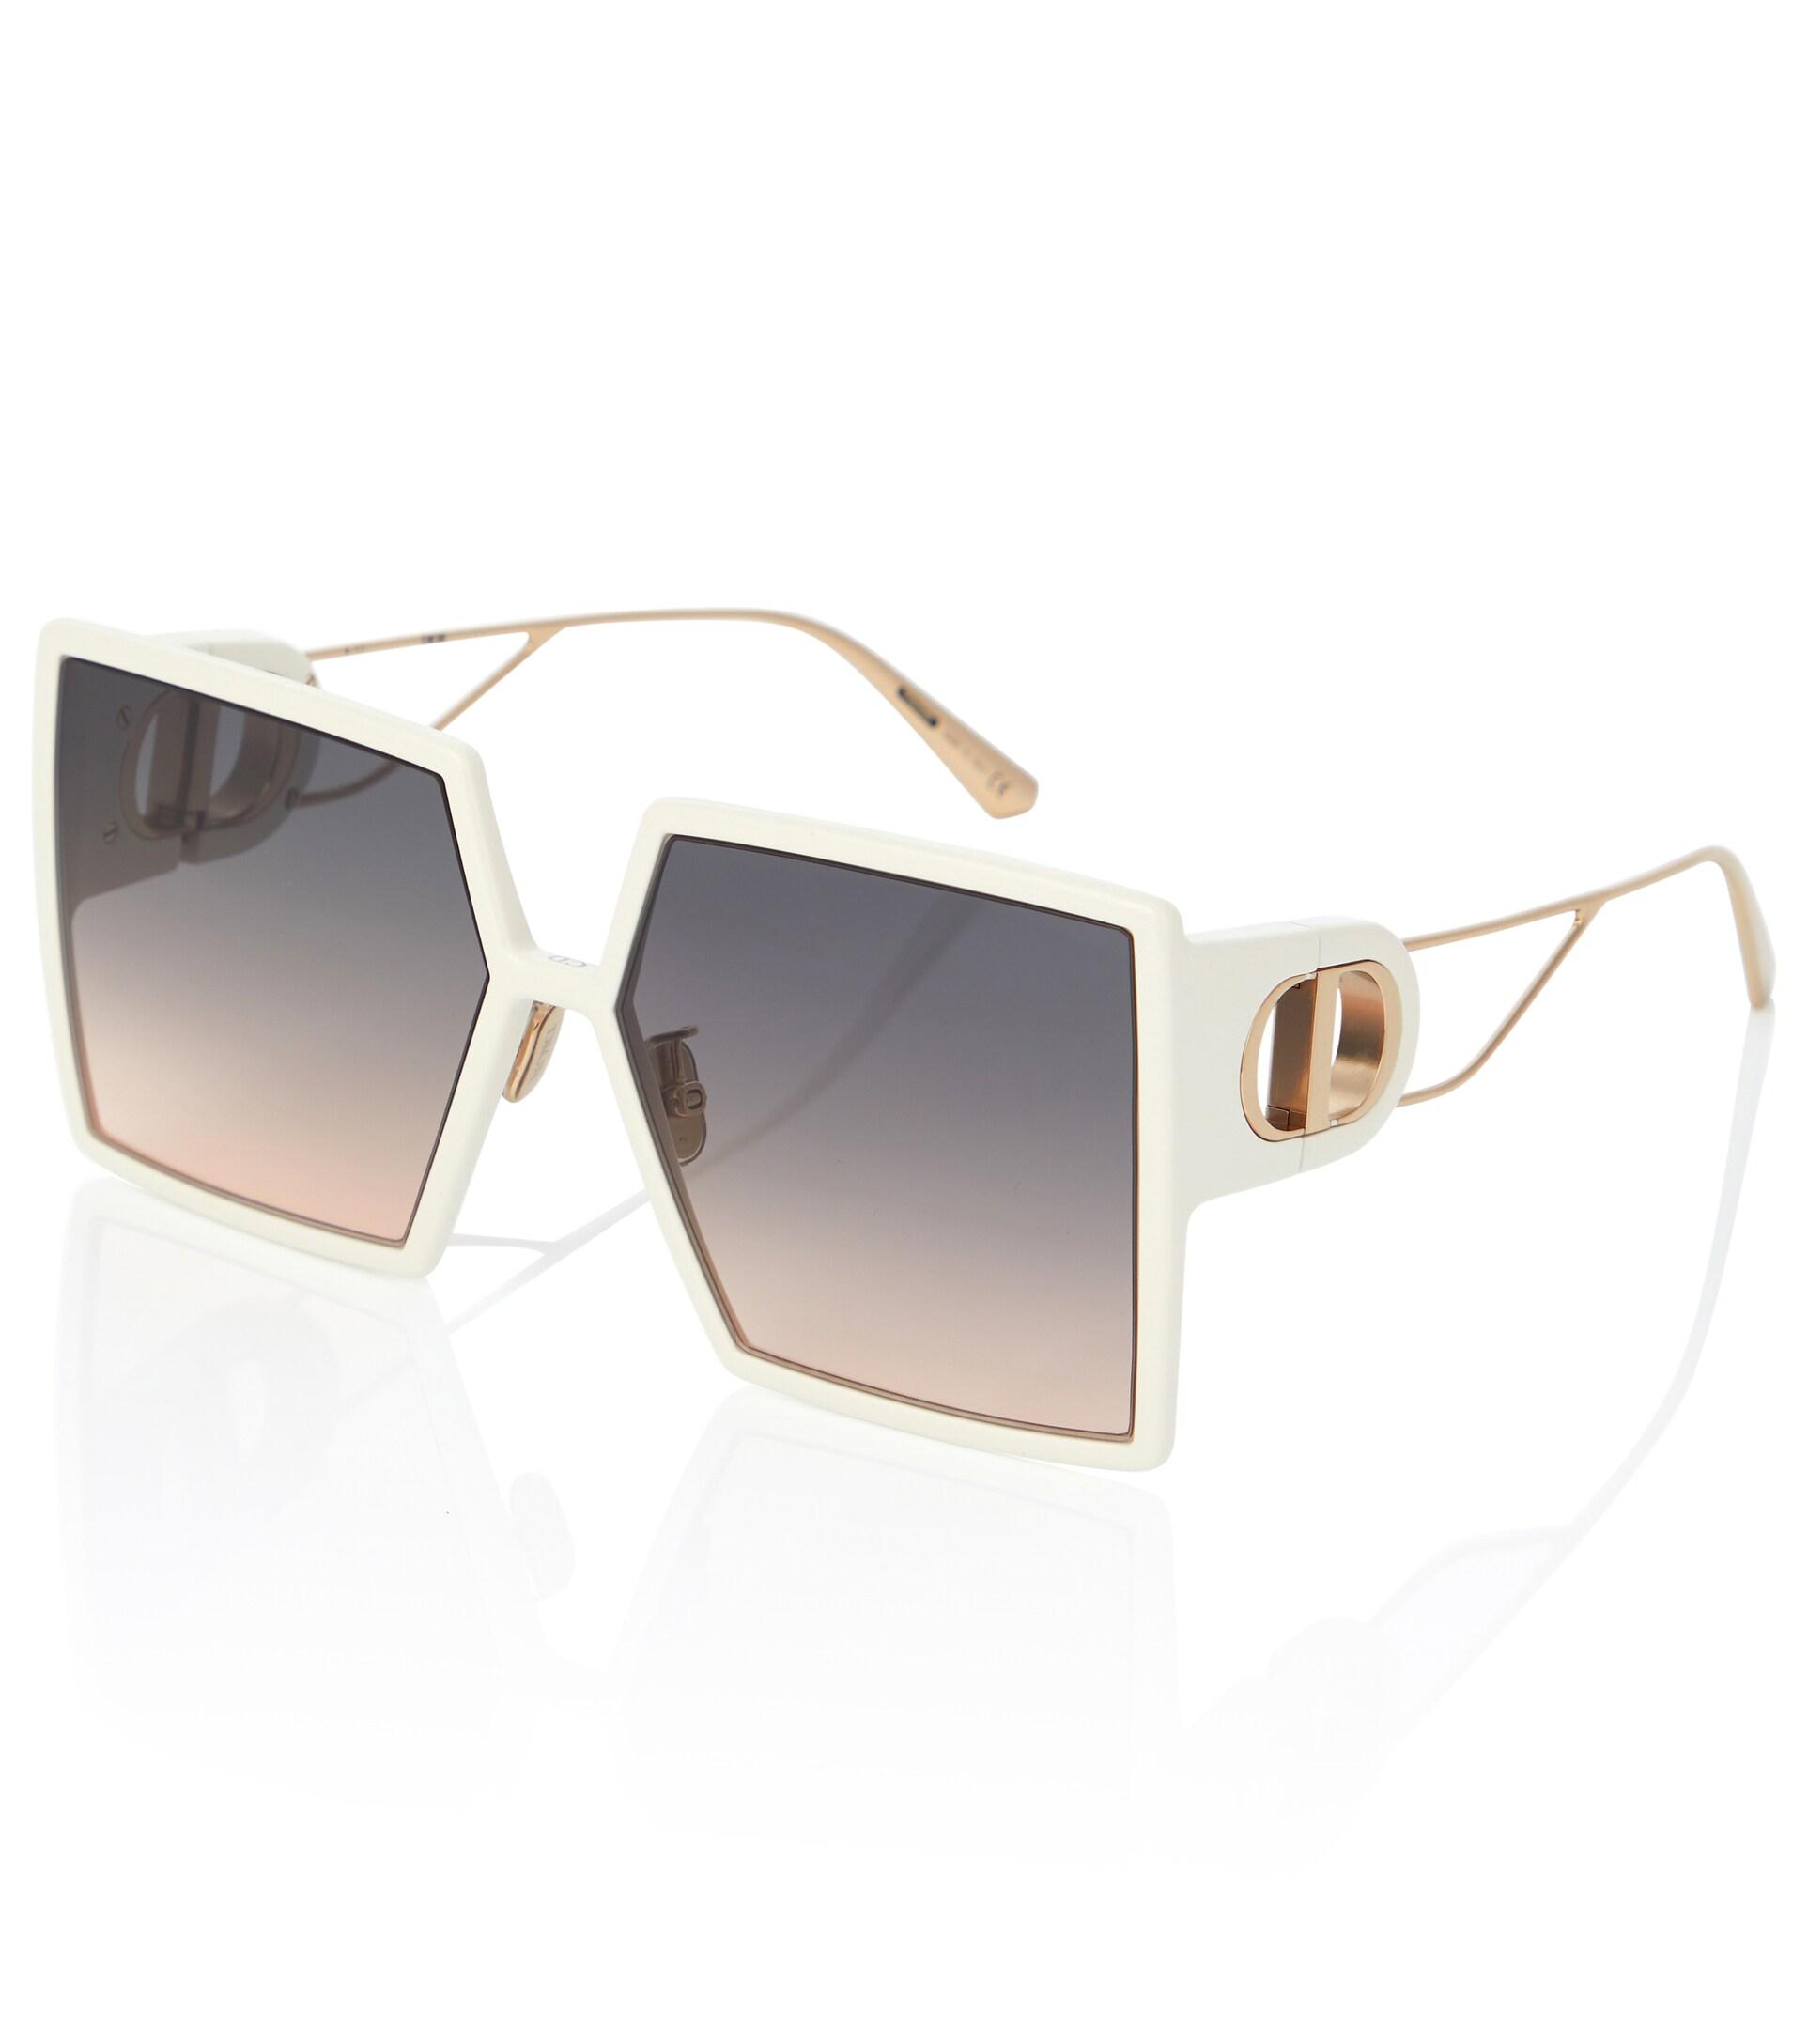 Dior Synthetic 30montaigne Su Oversized Sunglasses in White Grey - Save 10% Womens Sunglasses Dior Sunglasses 